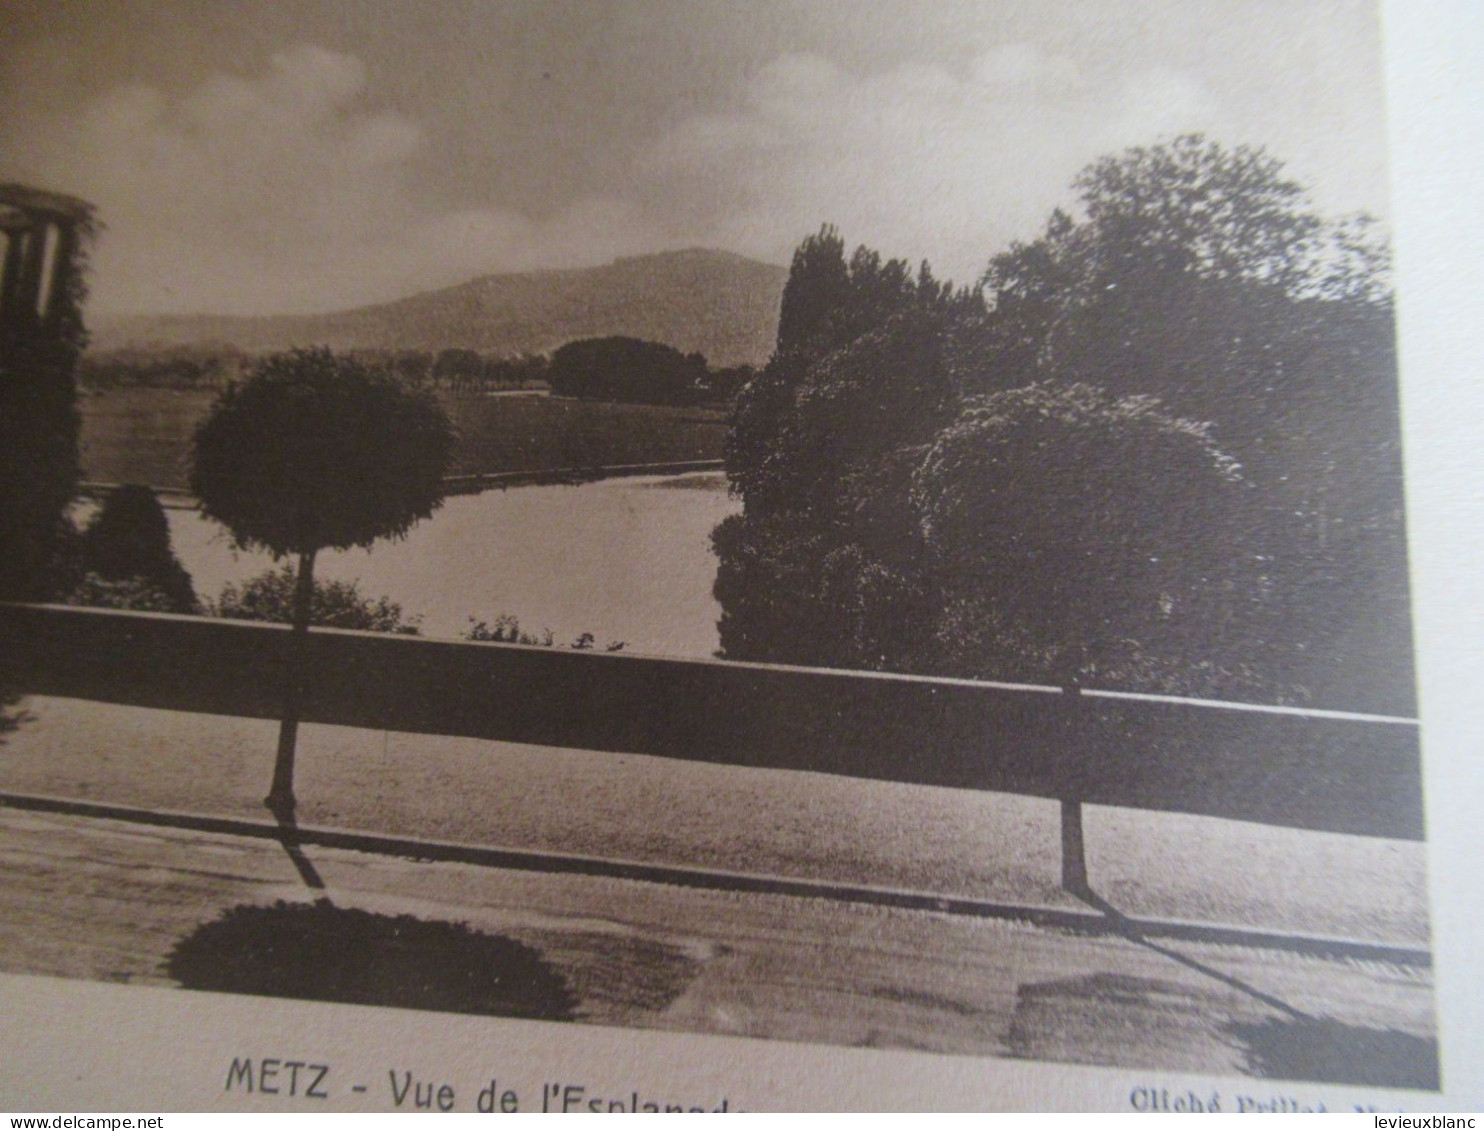 Carnet souvenir 17 vues de METZ/offert par la Maison FABRE/grainetier/METZ (Moselle) /rue Mazelle/vers  1920-30   PGC552